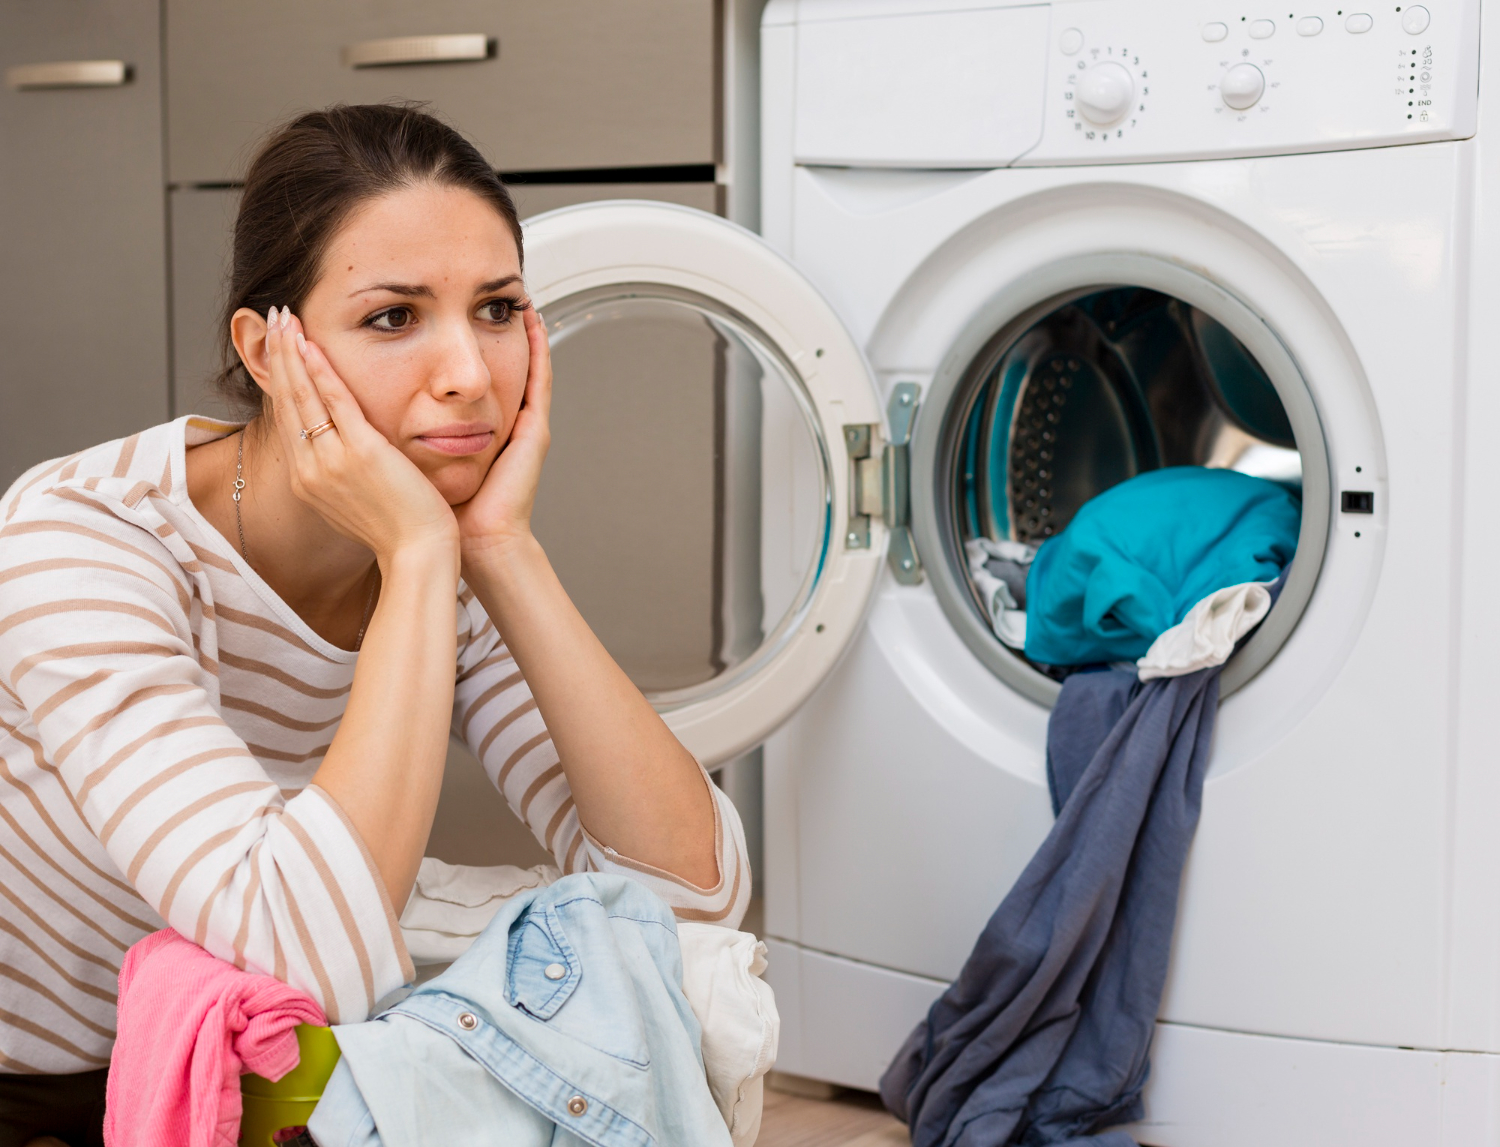 Lo estás haciendo mal: 13 errores comunes al usar la secadora - La Tercera